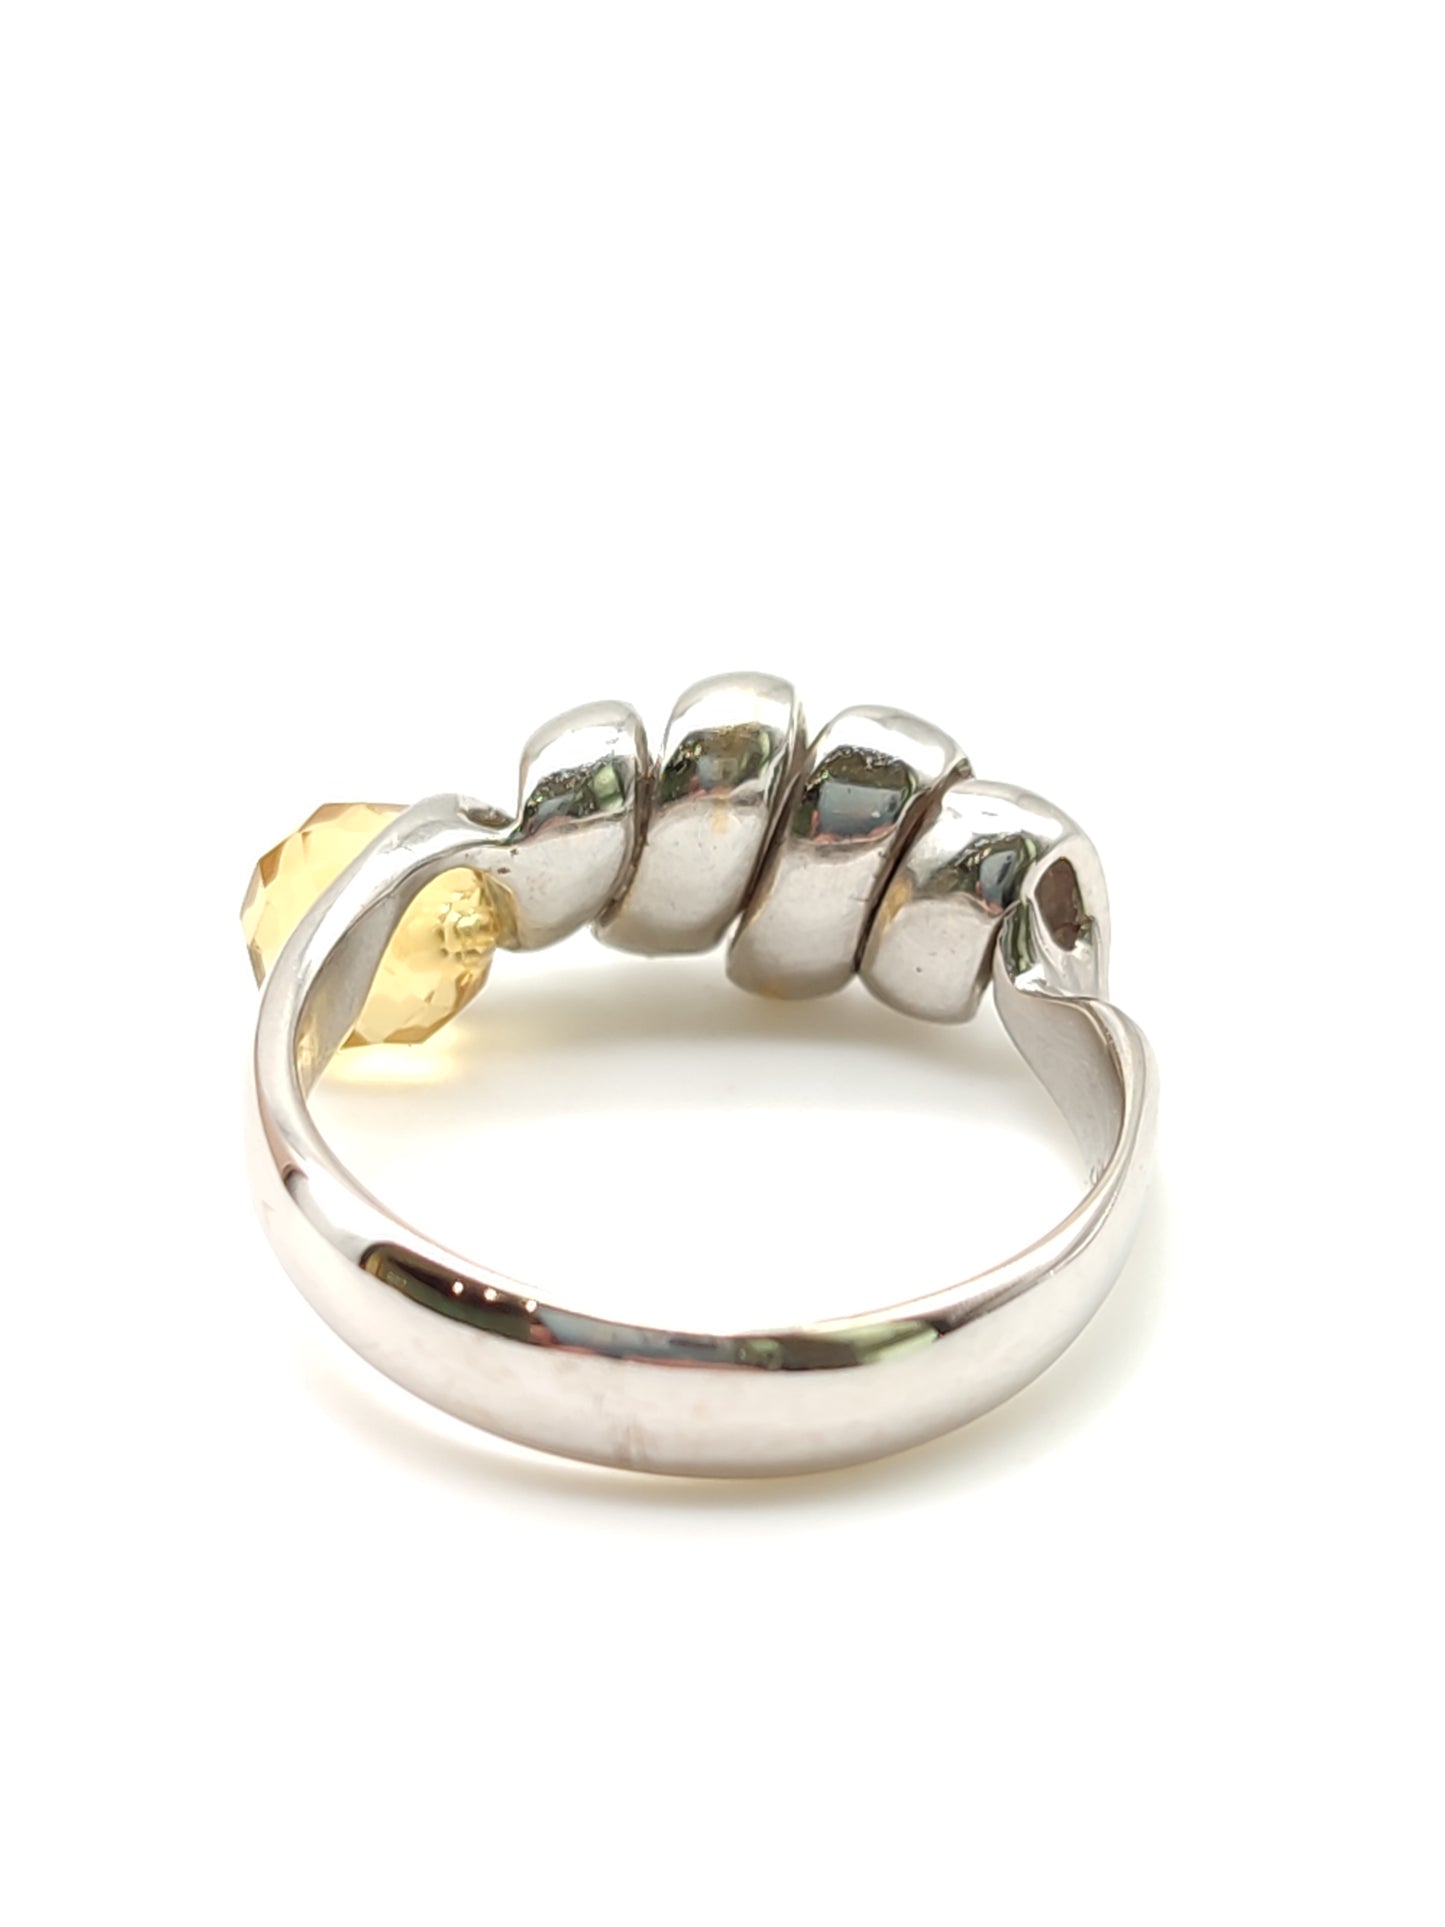 Pavan - Gold ring with citrine quartz